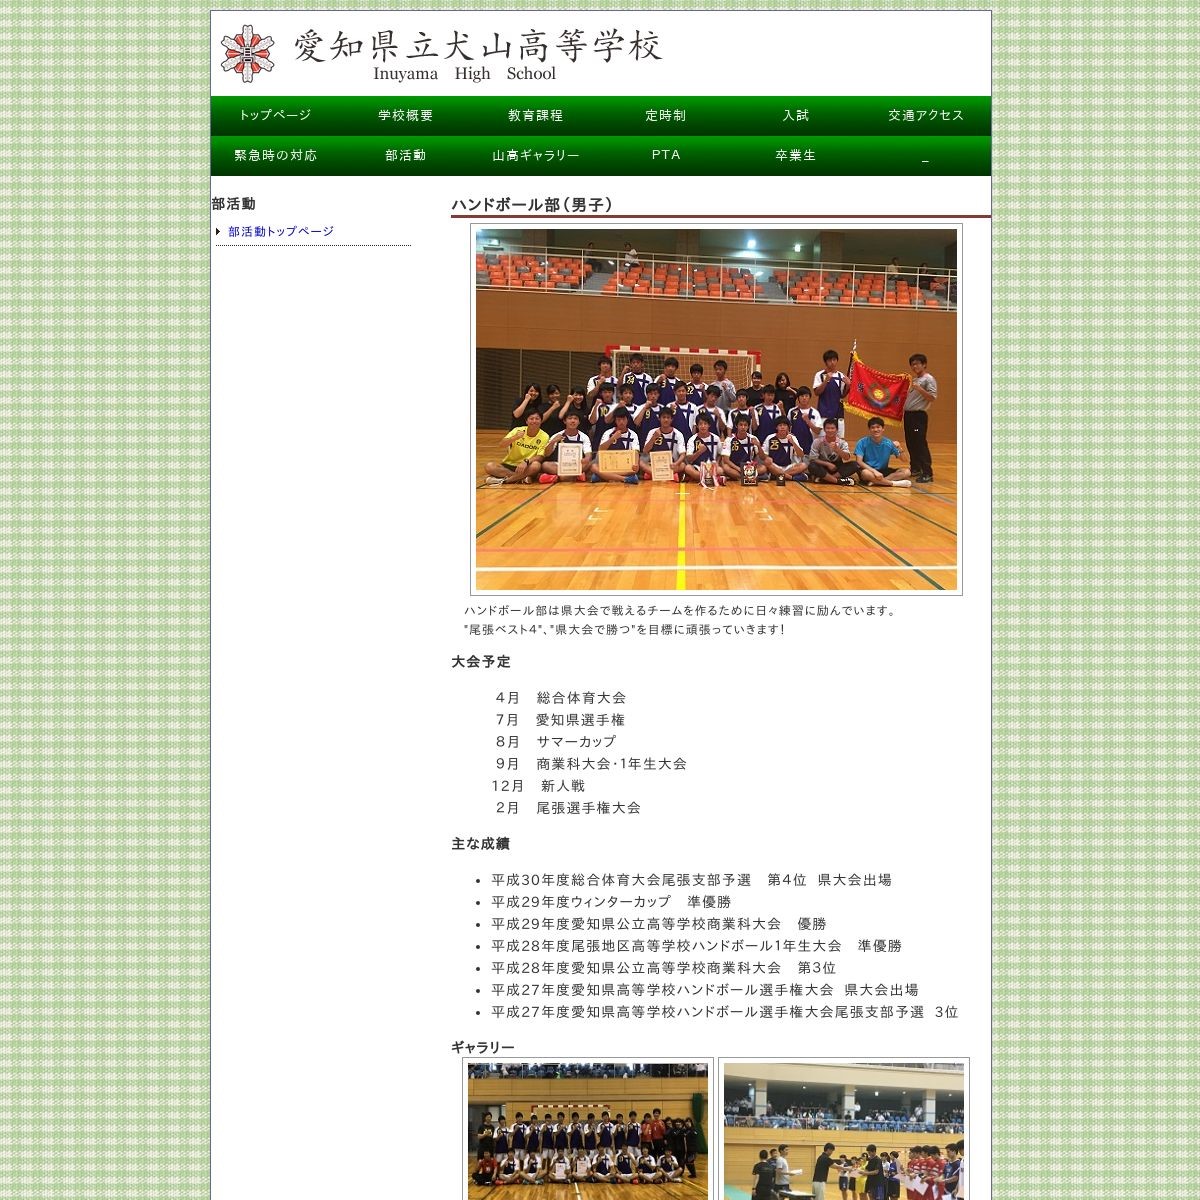 愛知県立犬山高等学校ハンドボール部